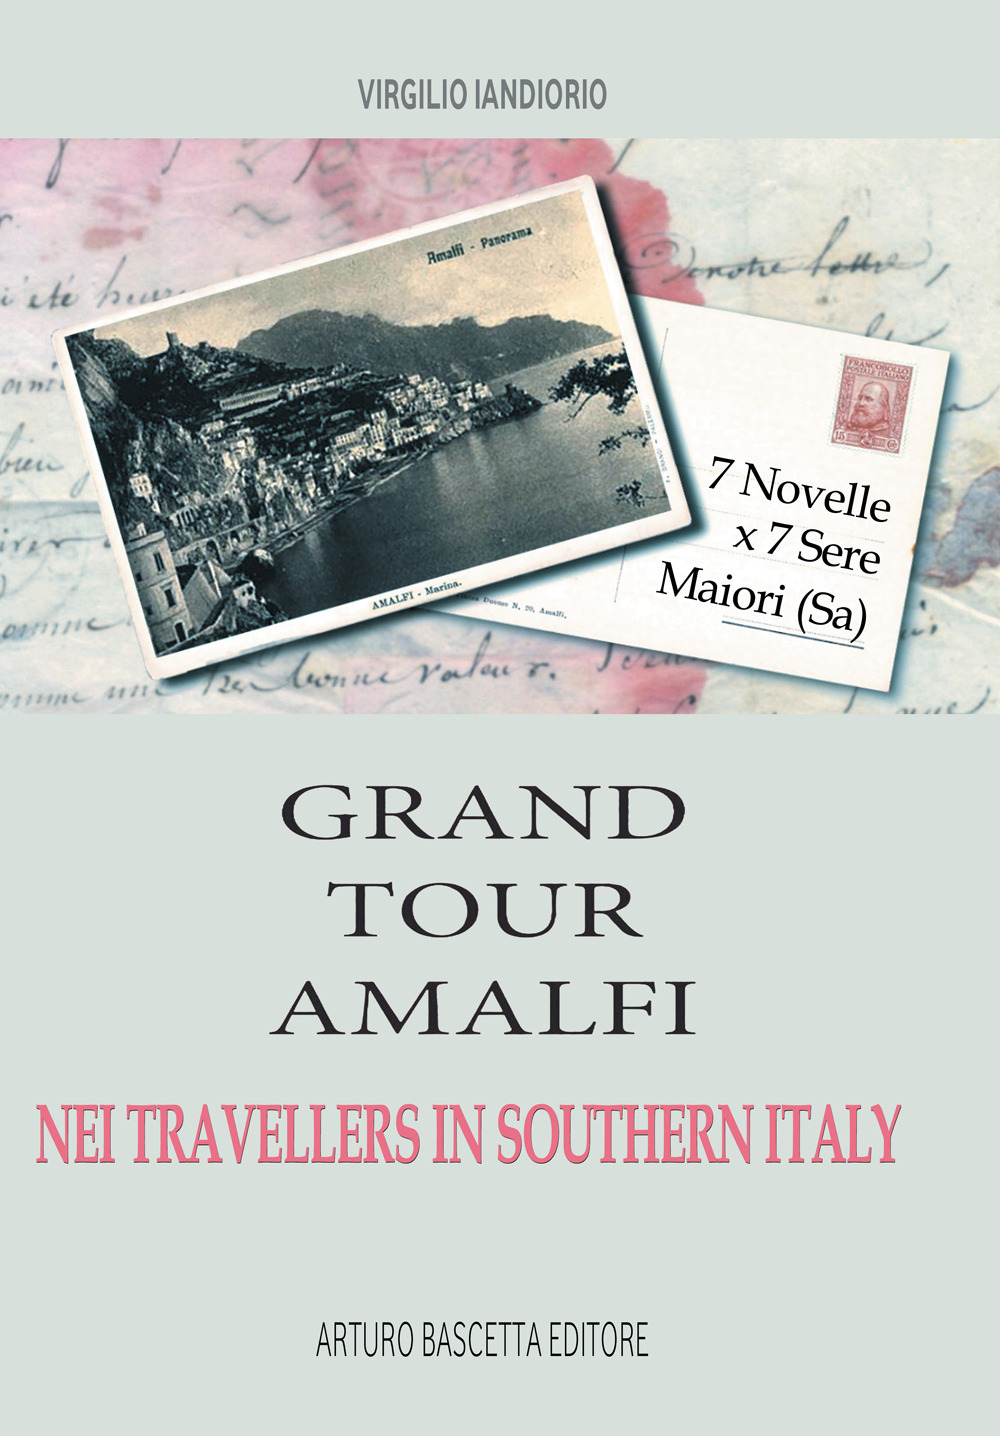 Grand tour Amalfi nei travallers in Southern Italy. Sette novelle per sette sere, Maiori, Salerno